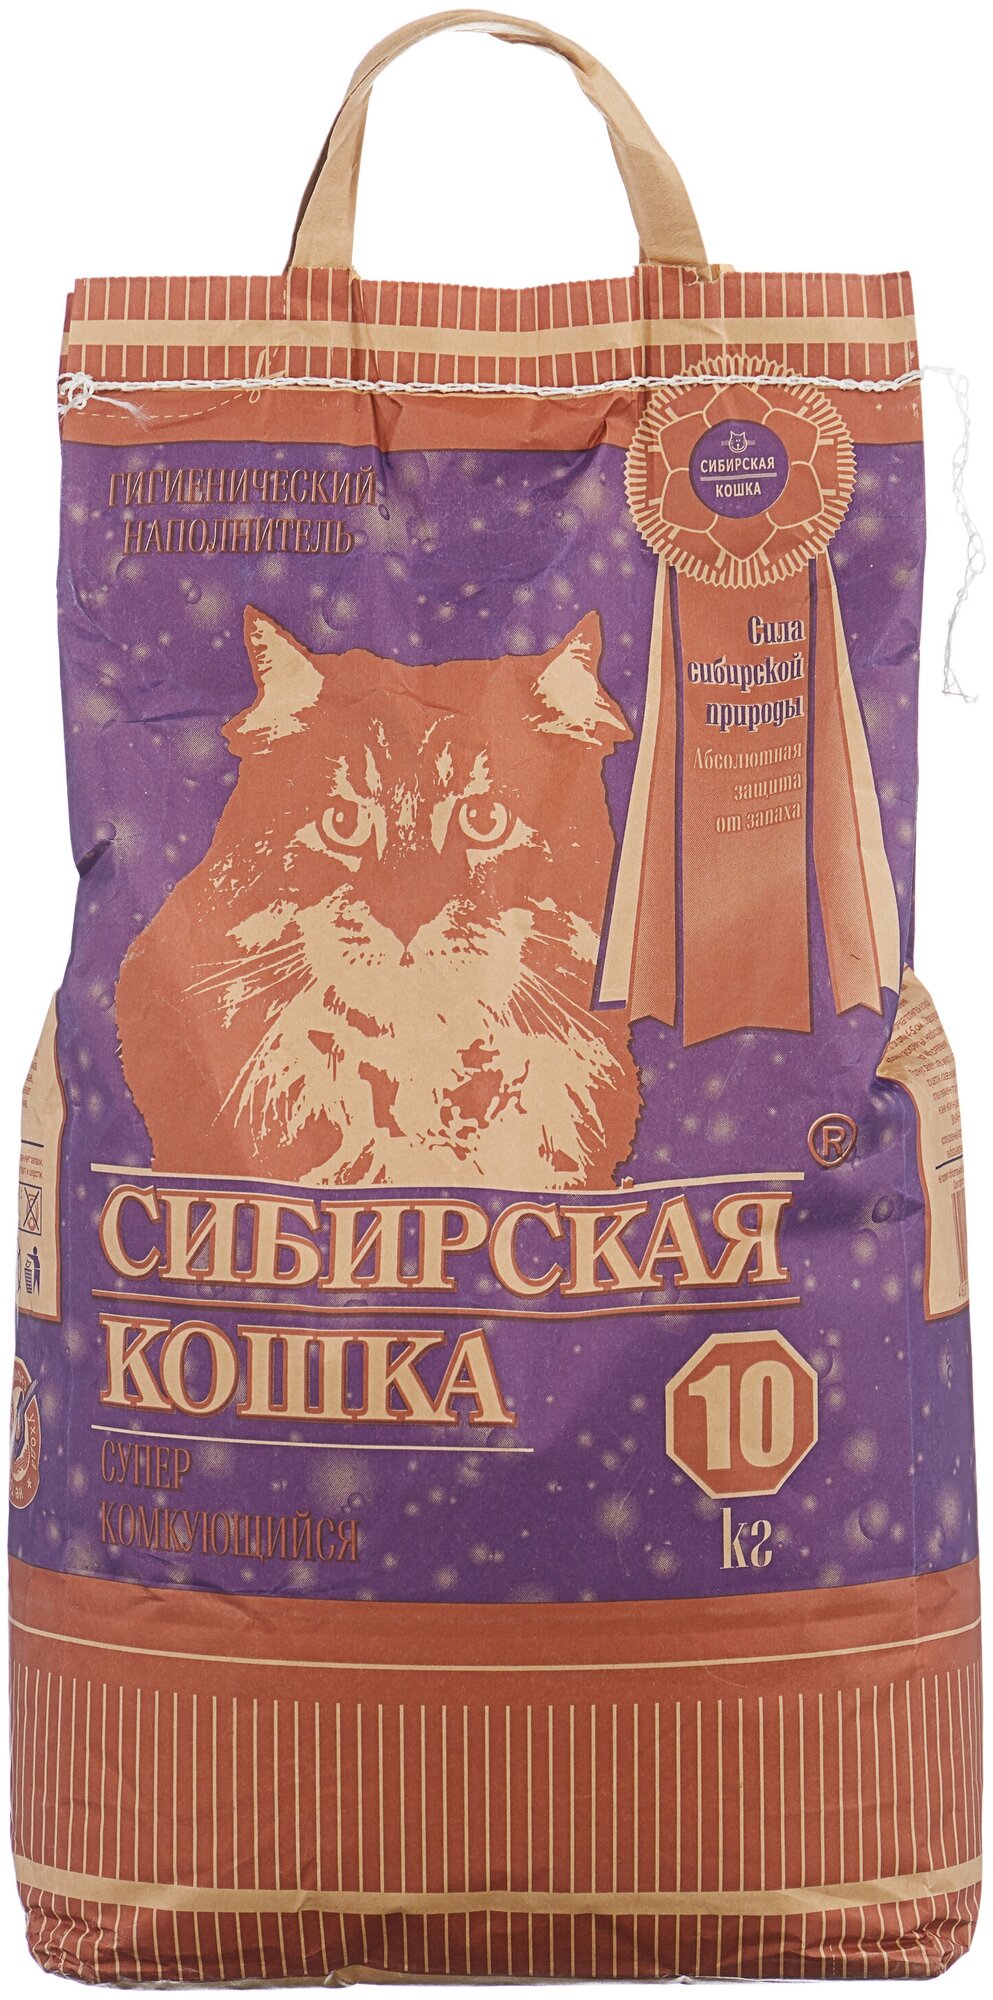 Комкующийся наполнитель Сибирская кошка Супер 10 кг